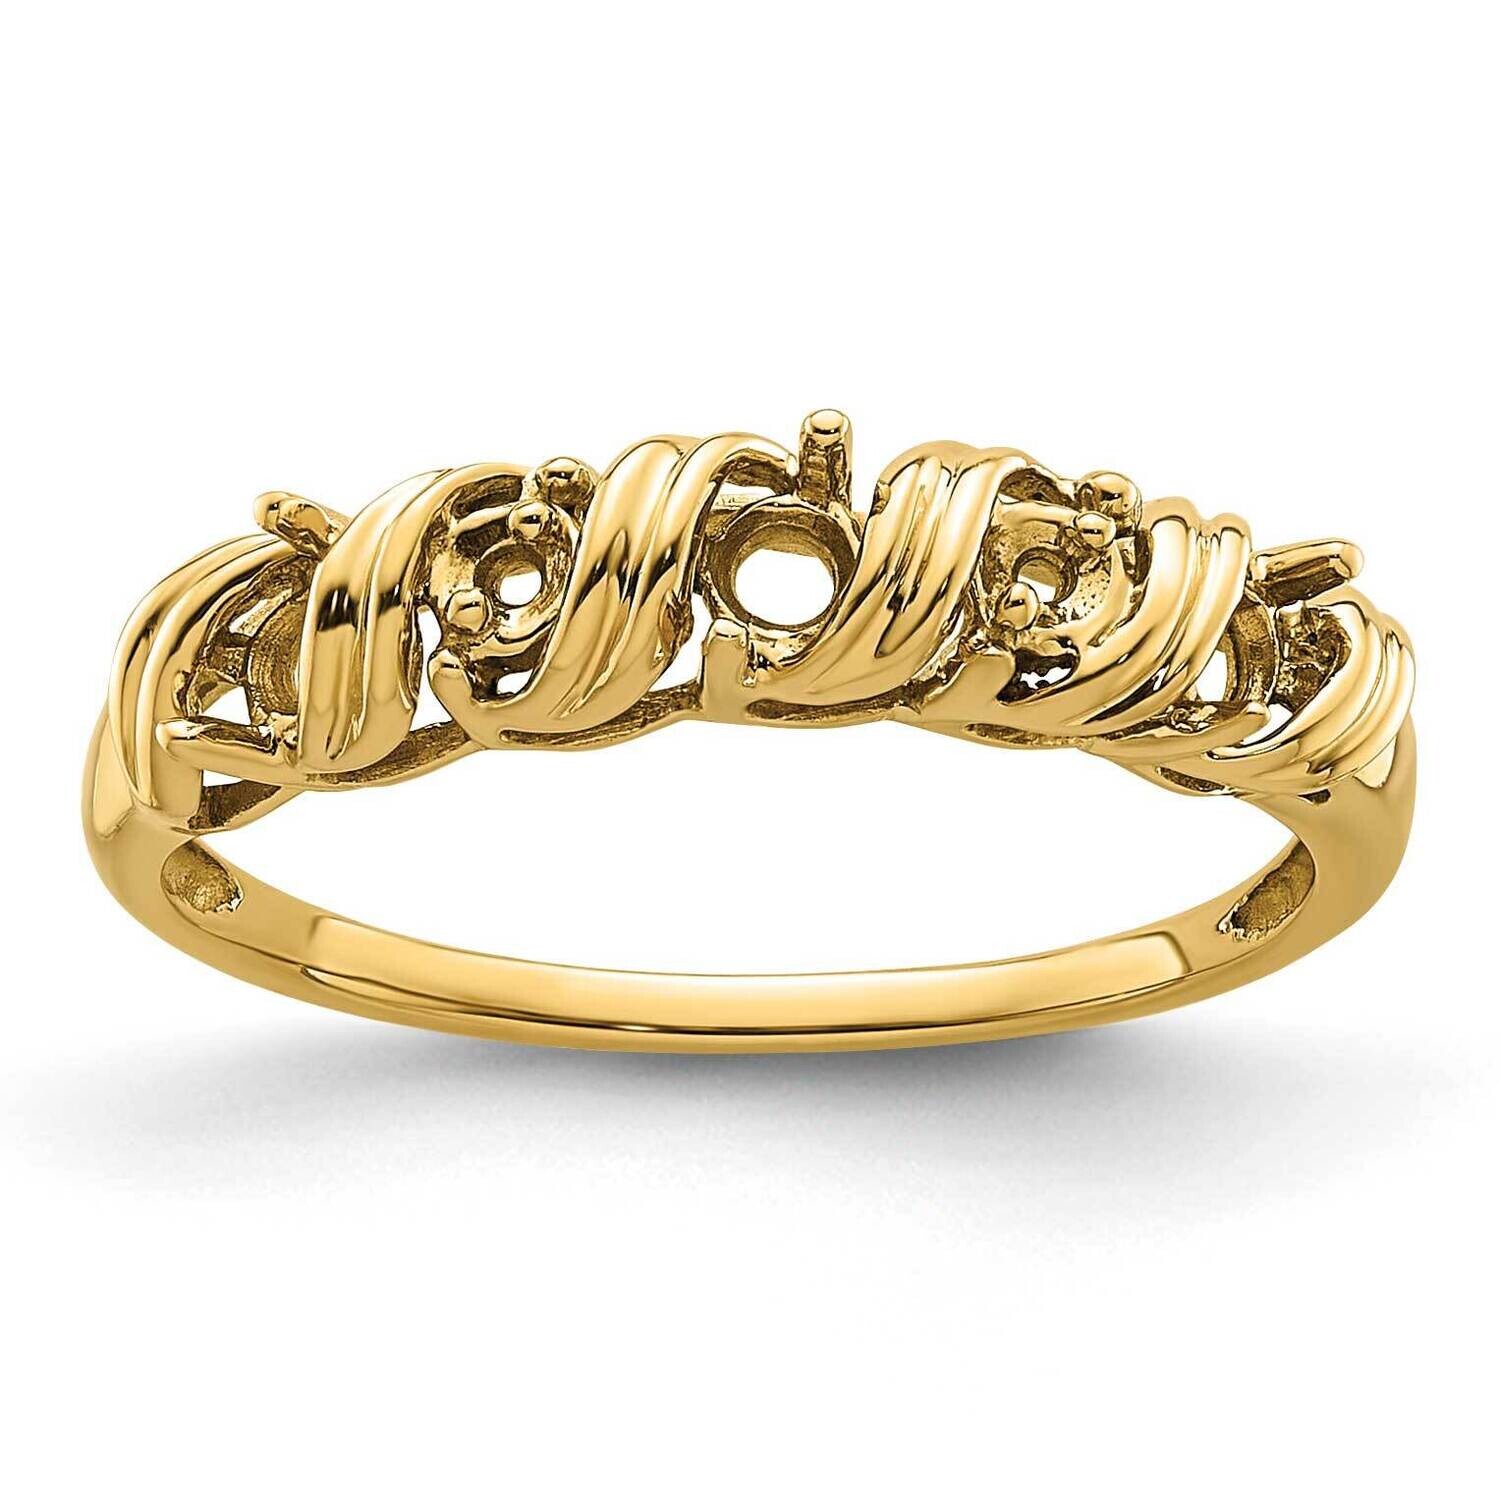 Diamond & Gemstone Ring Mounting 14k Gold Y4718